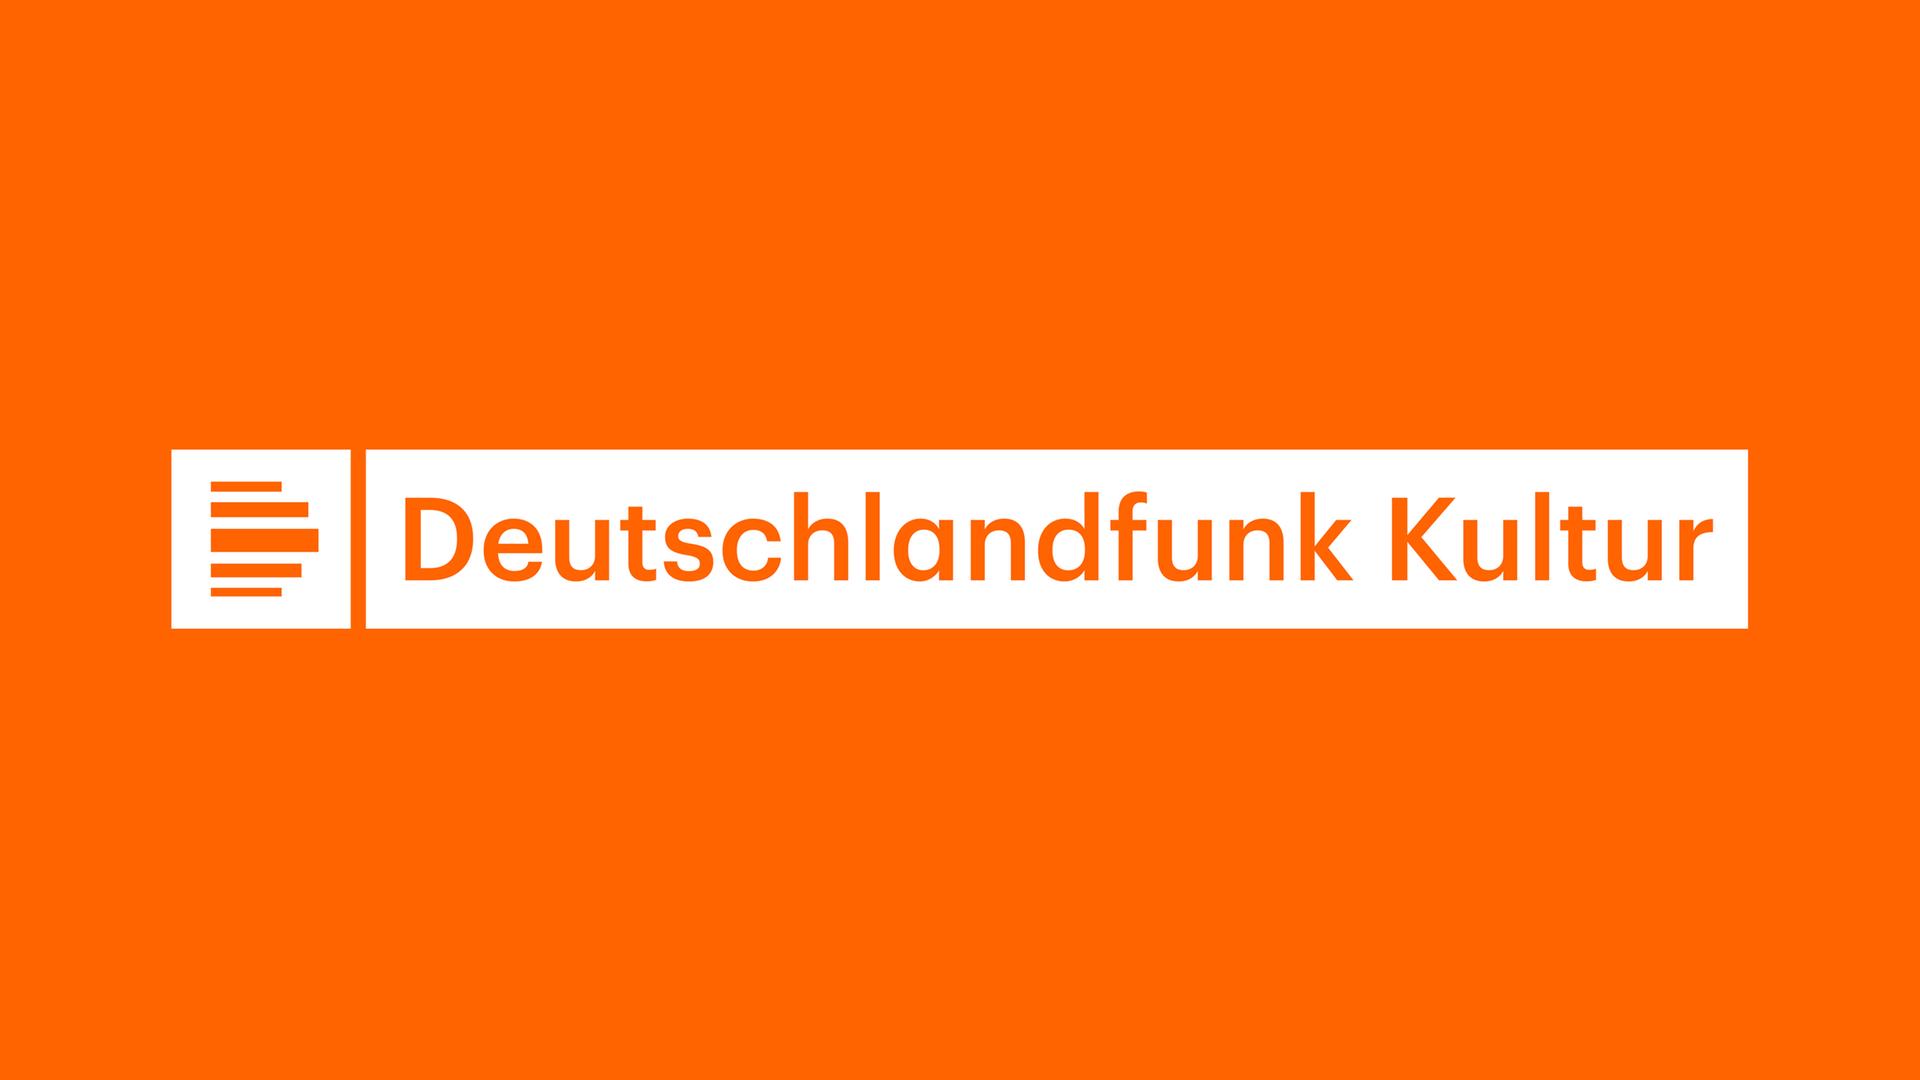 www.deutschlandfunkkultur.de